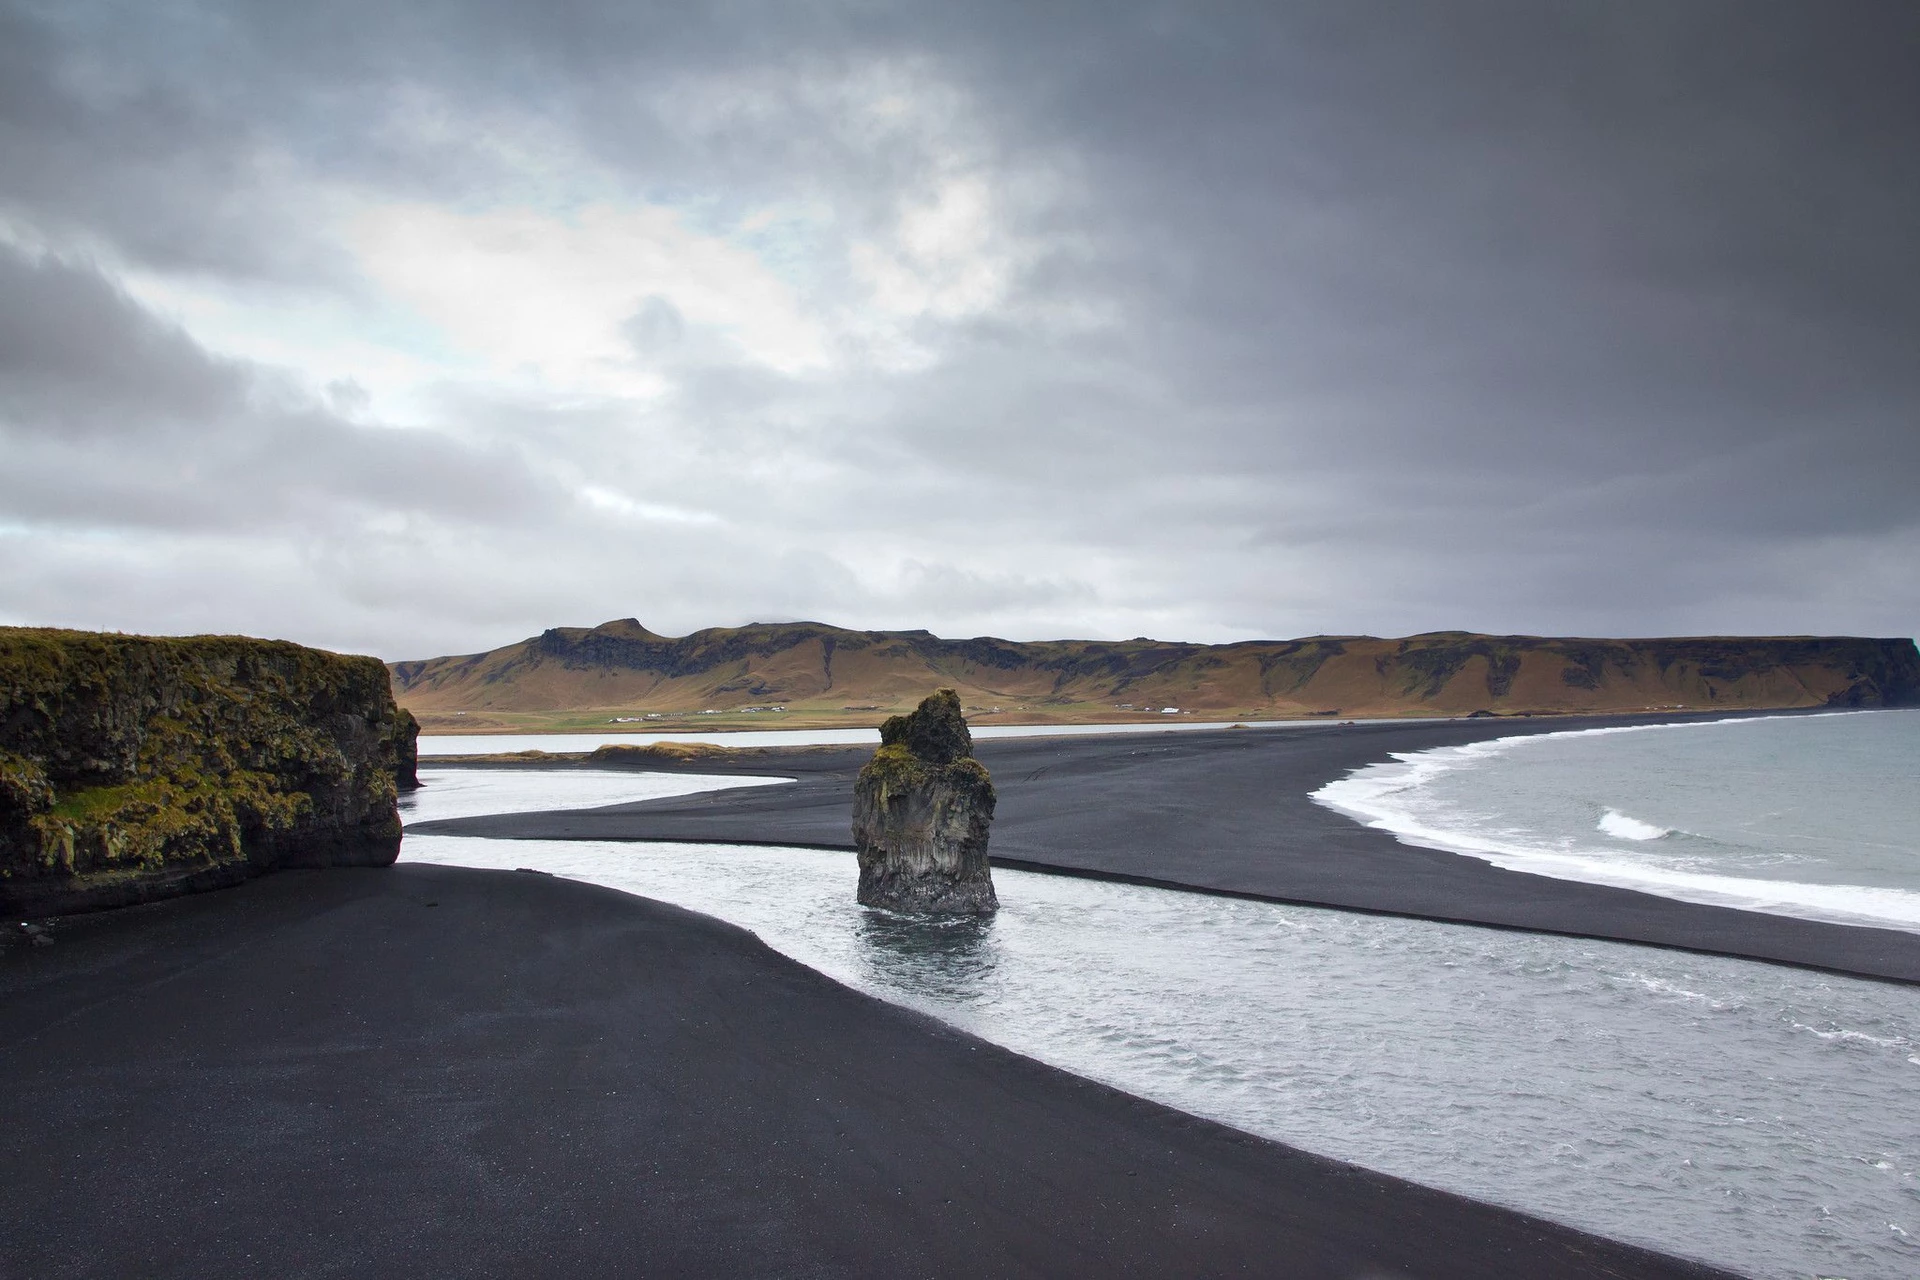 Bãi biển cát đen (Iceland): Dù không phải bãi biển cát đen núi lửa duy nhất ở Iceland, Reynisfjara lại đặc biệt nhờ được quanh bởi cao nguyên hùng vĩ, các vách đá dựng đứng và vòm đá bazan huyền bí. Biển nằm ở miền Nam Iceland, cách thủ đô Reykjavik 177 km là một trong những địa điểm quay bộ phim Game of Thrones. Do đặc tính dữ dội của những con sóng, nơi đây không thích hợp để bơi lội. Bạn có thể thử trèo lên các cột đá bazan chụp ảnh và ngắm cảnh. Ảnh: Pinterest.